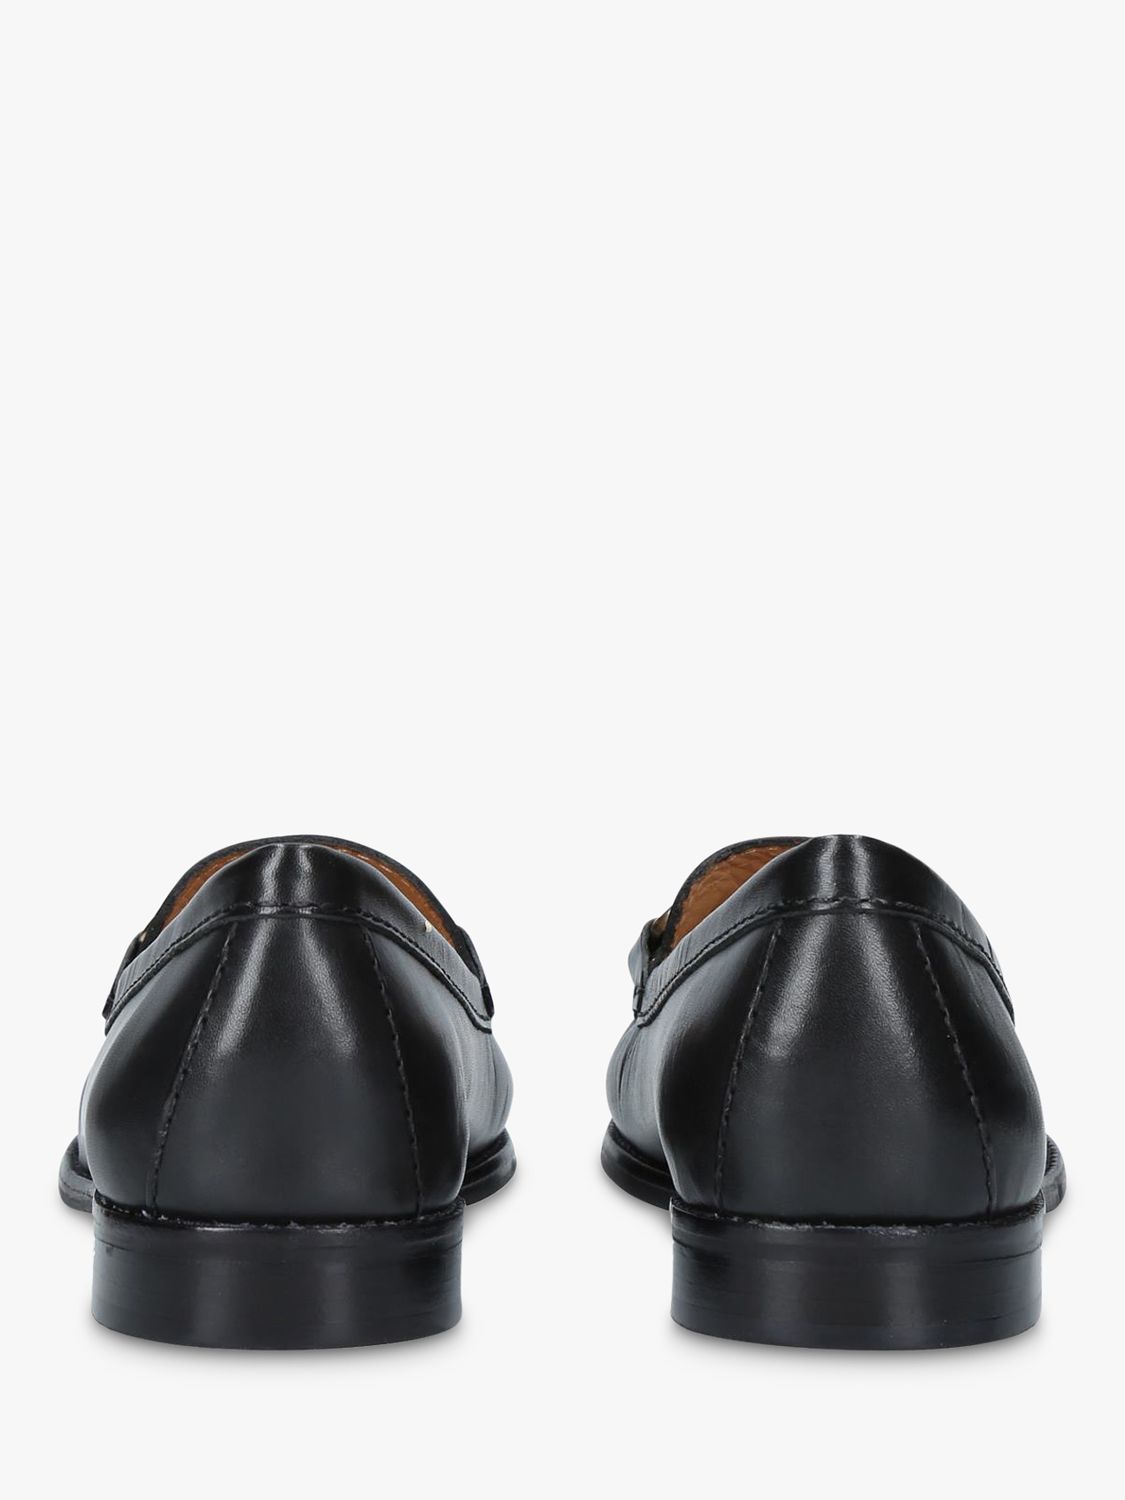 Carvela Comfort Click Loafers